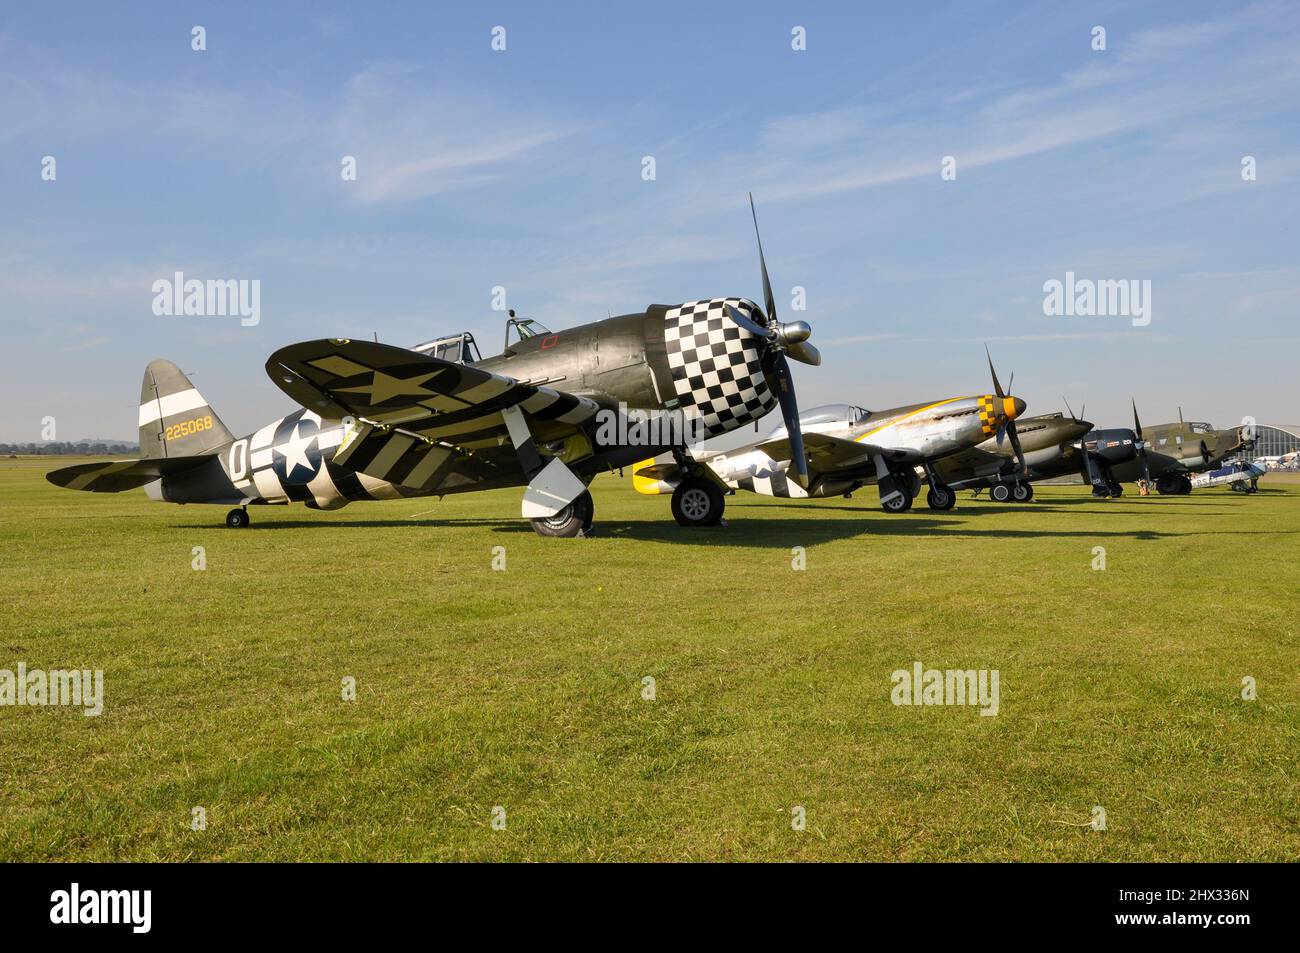 Republik P-47 Thunderbolt, zweiter Weltkrieg, Kampfflugzeug aus dem Zweiten Weltkrieg auf der Fluglinie mit P-51 Mustang und anderen Flugzeugen. Flugzeuge des Zweiten Weltkriegs Stockfoto